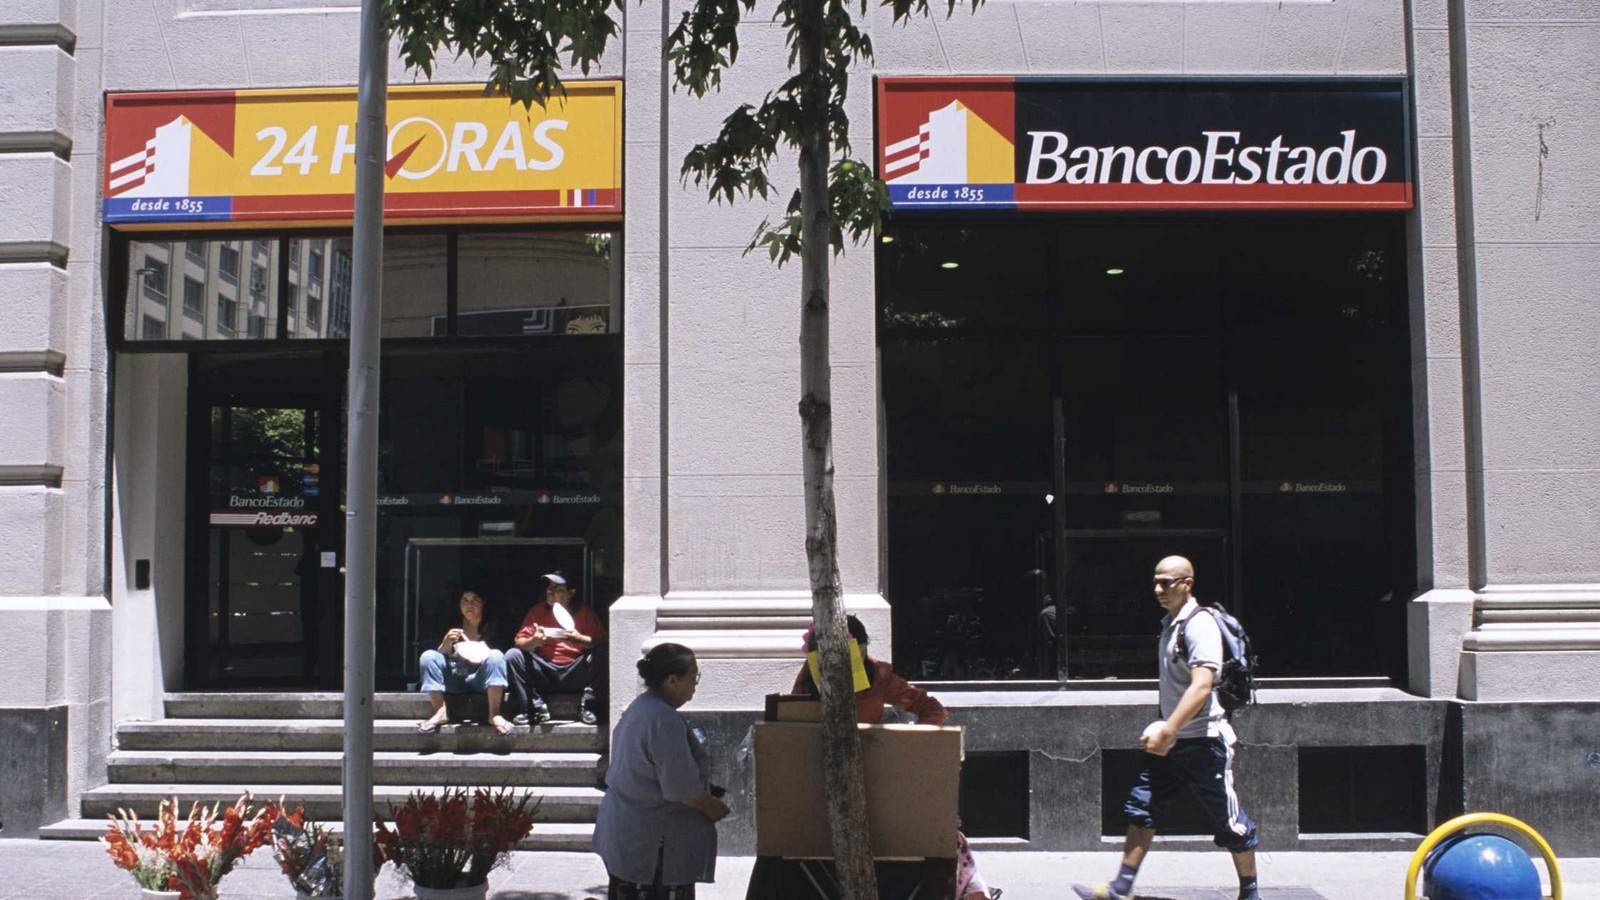 La Bancoestado du Chili n'est pas épargnée par les cyberattaques,
Auteurs  : IPON-BONESS/SIPA,
Numéro de reportage  : 00504951_000004.